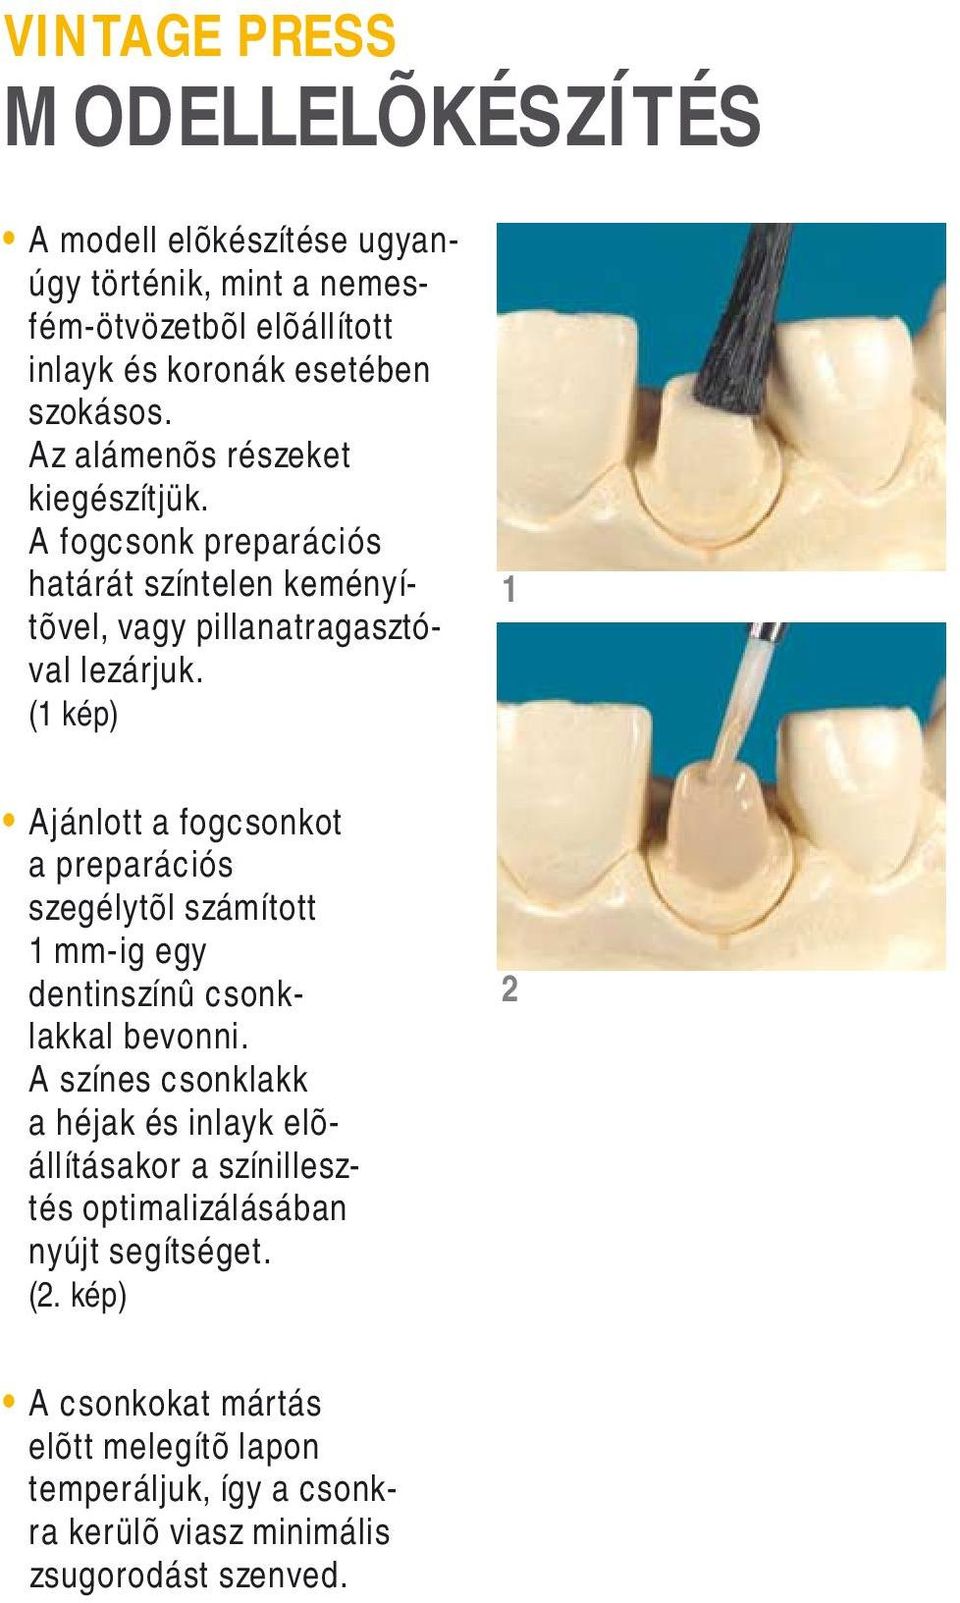 ( kép) Ajánlott a fogcsonkot a preparációs szegélytõl számított mm-ig egy dentinszínû csonklakkal bevonni.